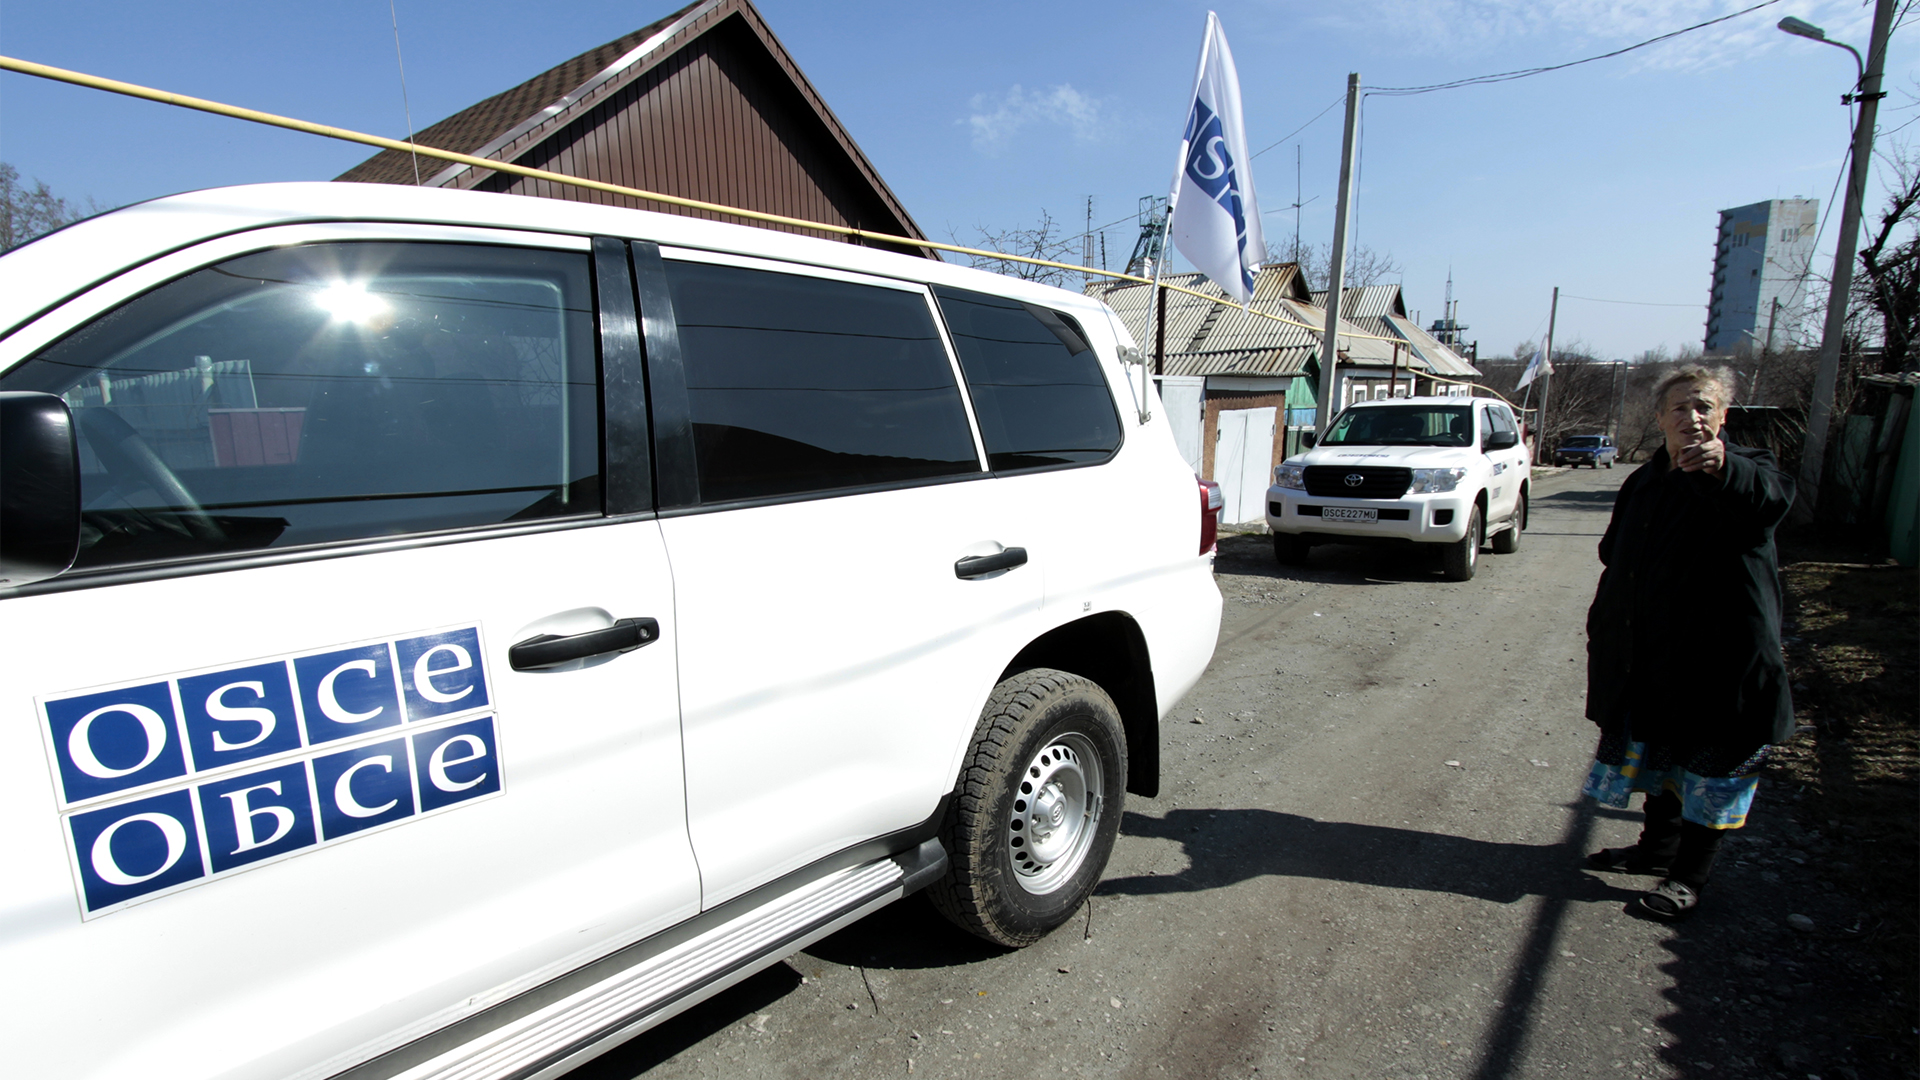 Fahrzeuge der OSZE fahren durch einen Ort bei Donezk | picture alliance / Sergey Averin